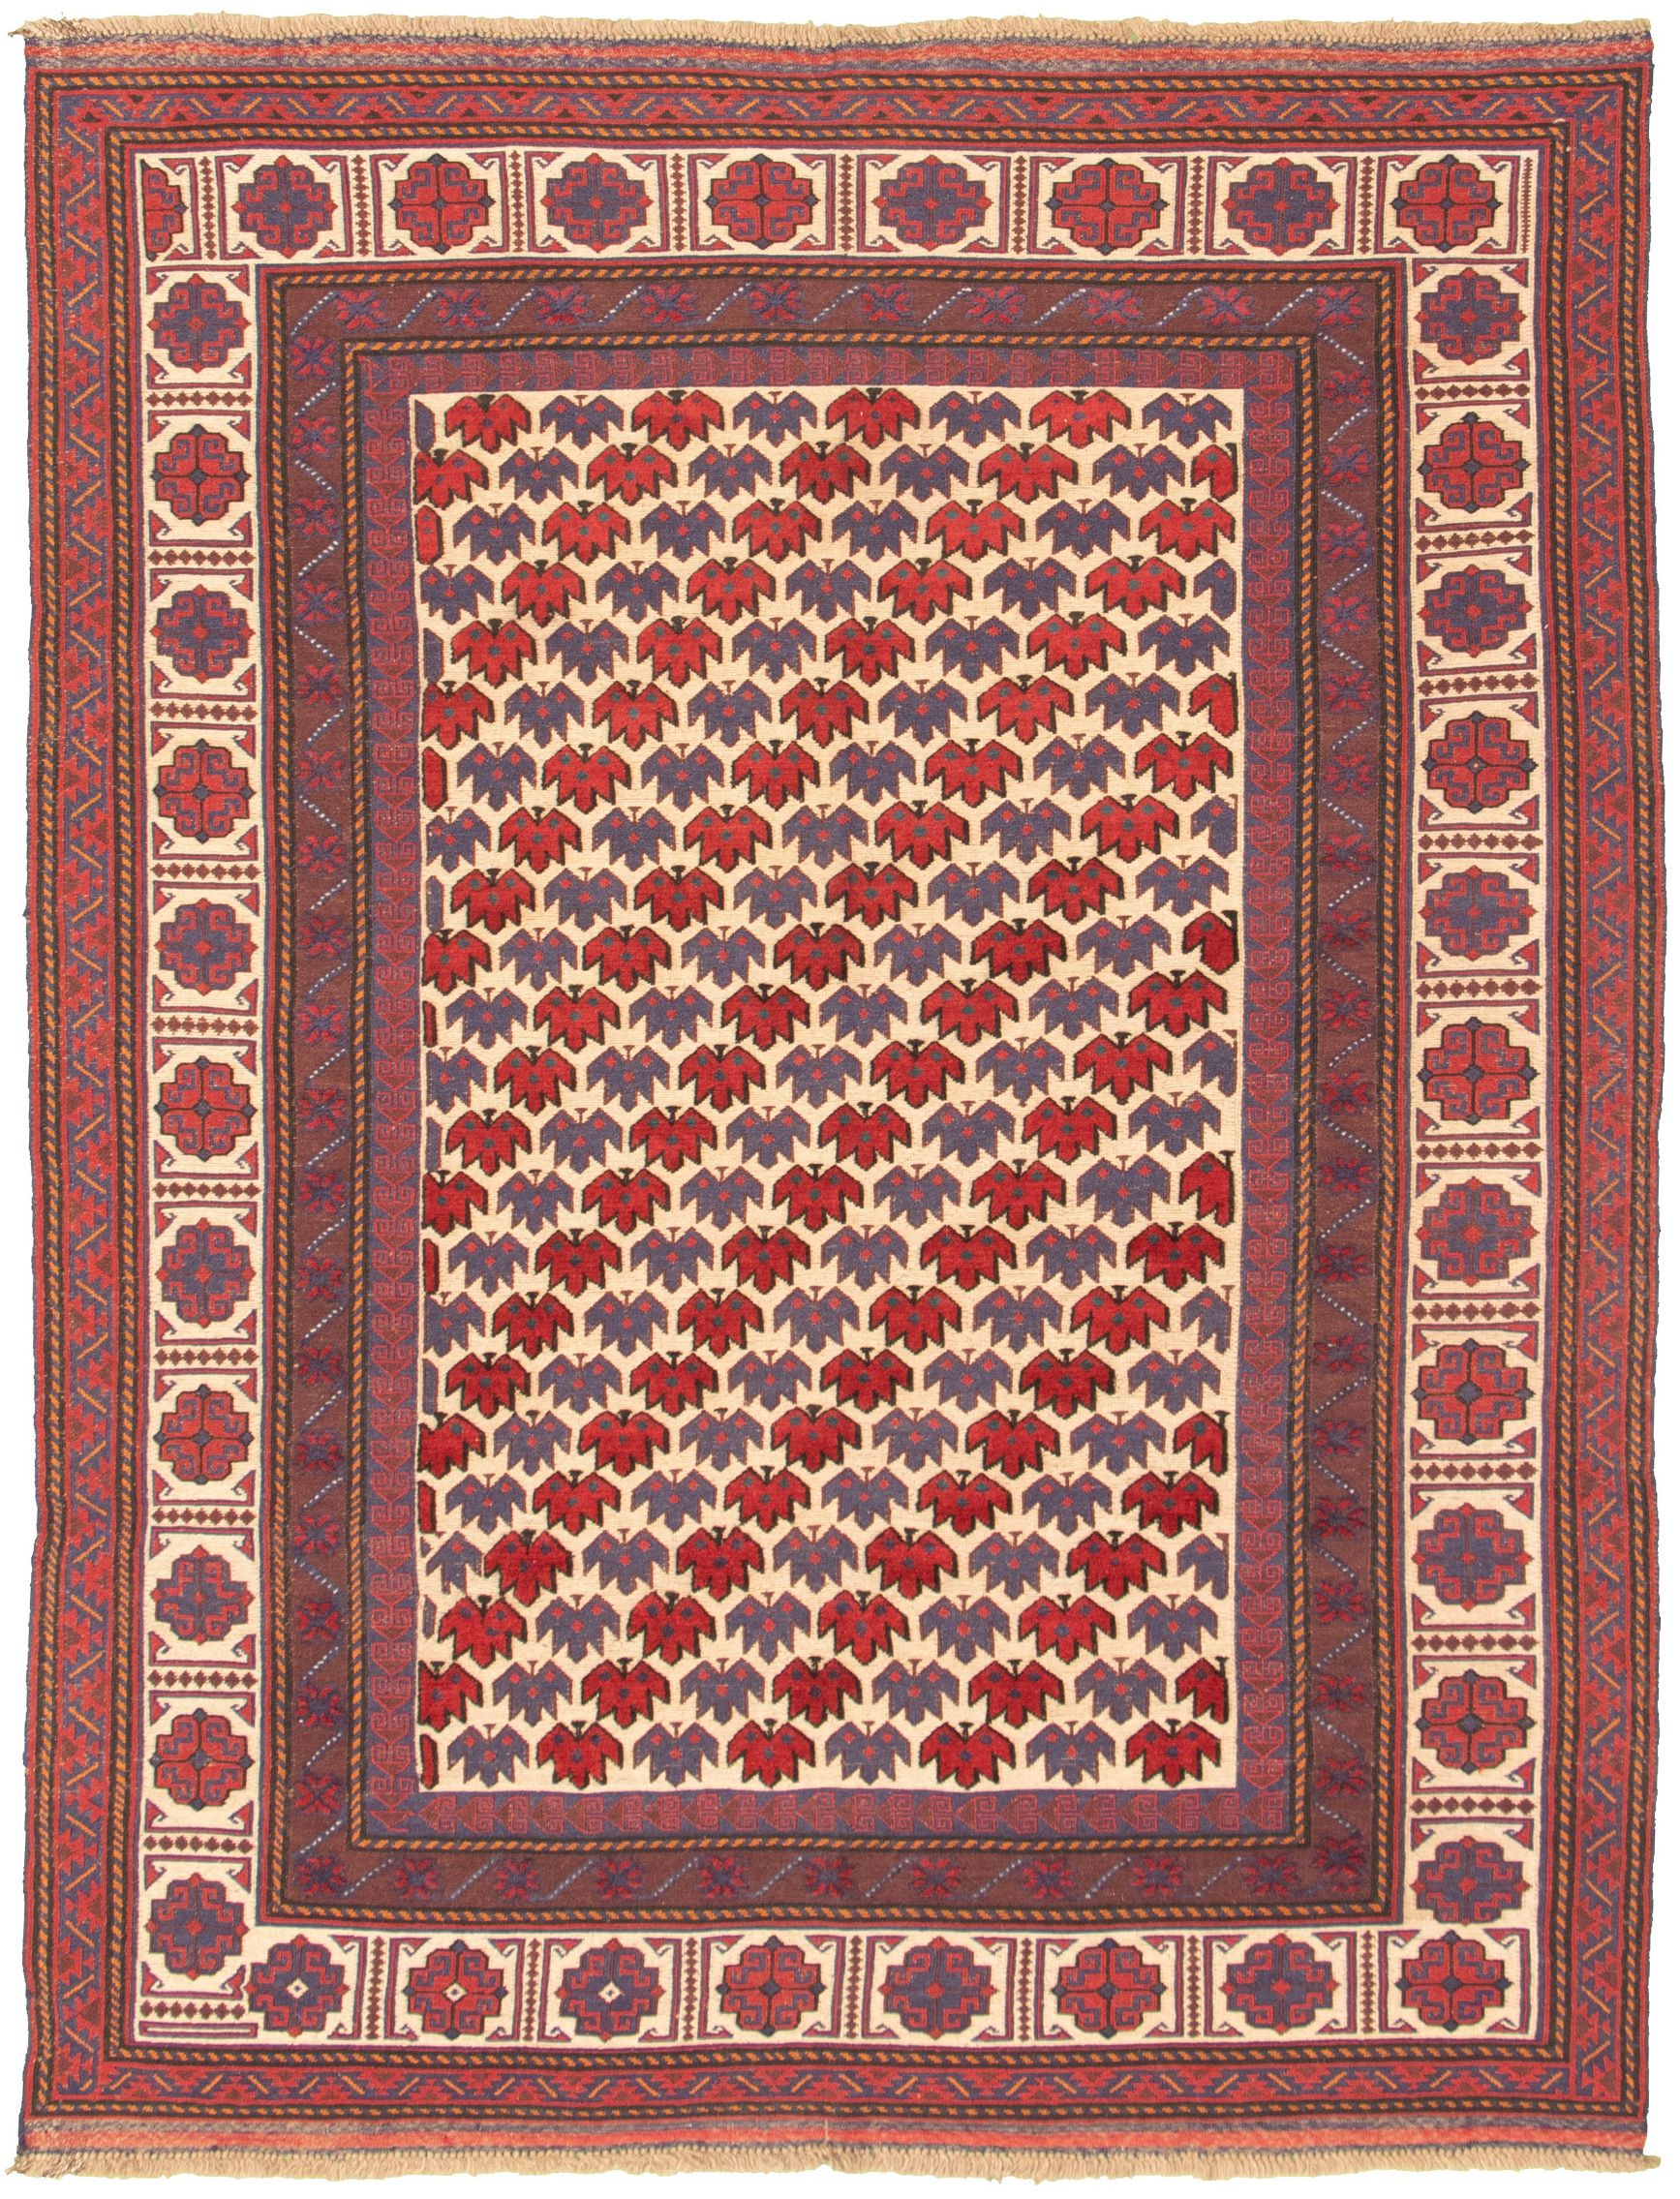 Hand-knotted Tajik Caucasian Dark Red Wool Rug 6'8" x 8'11"  Size: 6'8" x 8'11"  